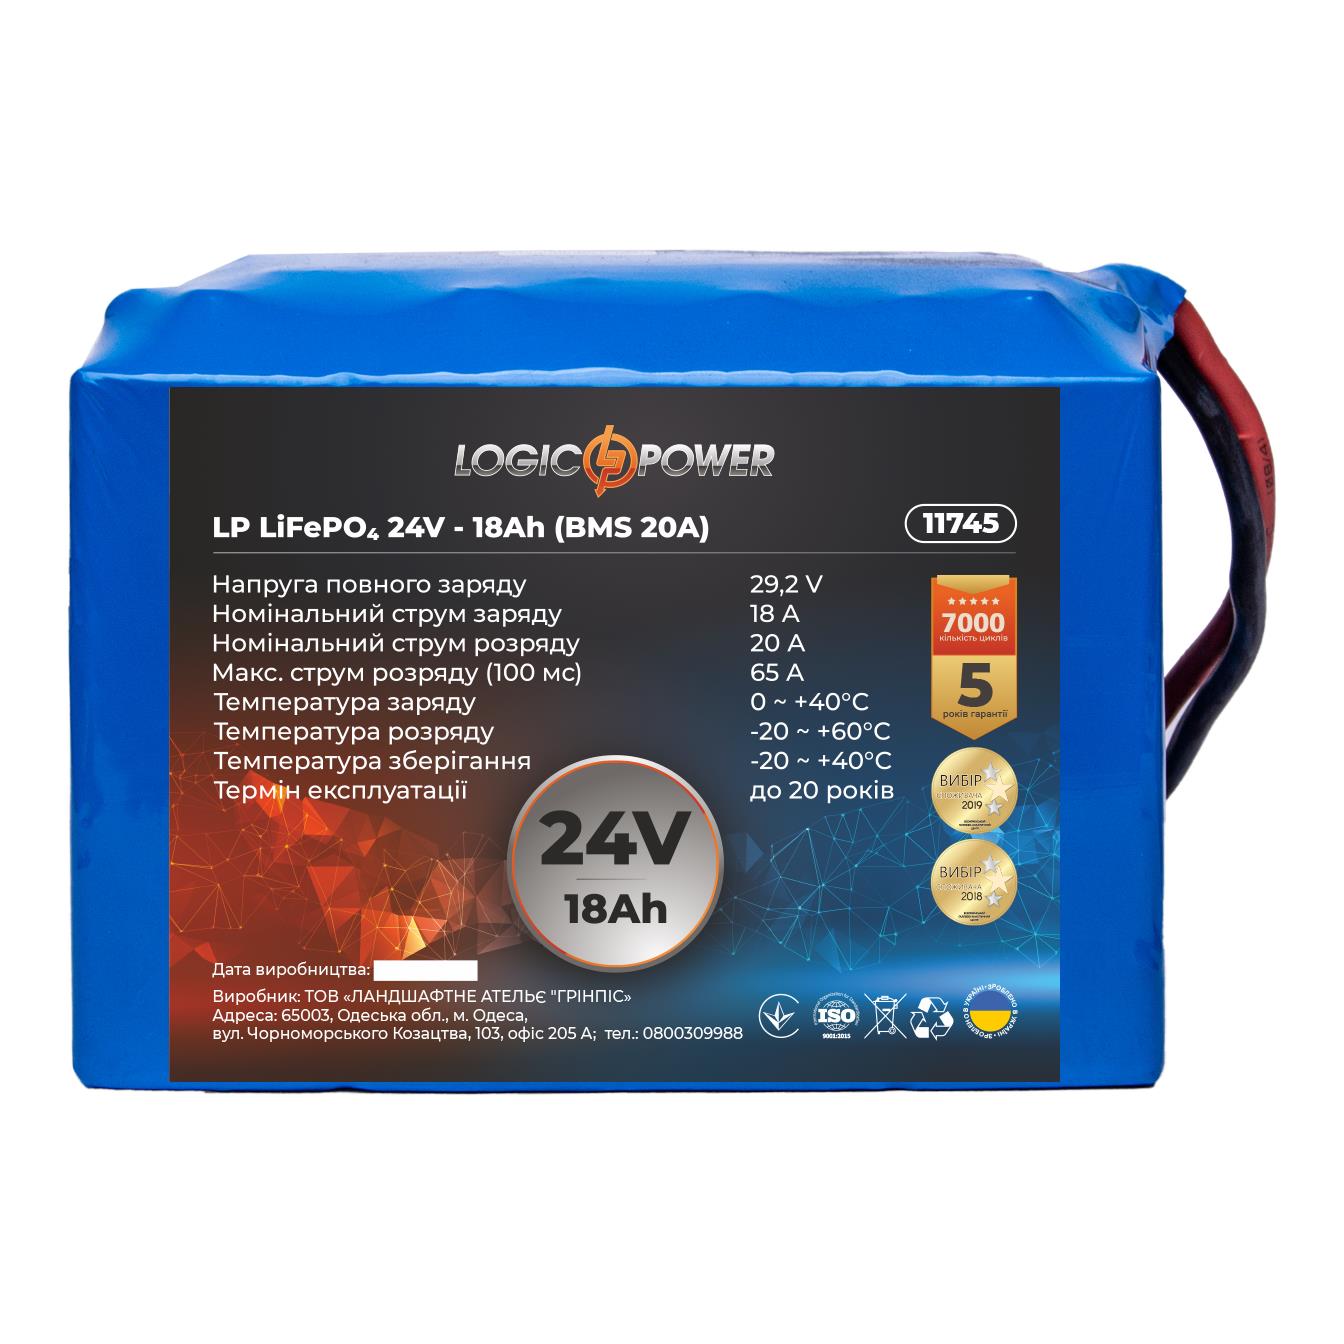 Аккумулятор литий-железо-фосфатный LogicPower LP LiFePO4 24V - 18 Ah (BMS 20A) (11745)